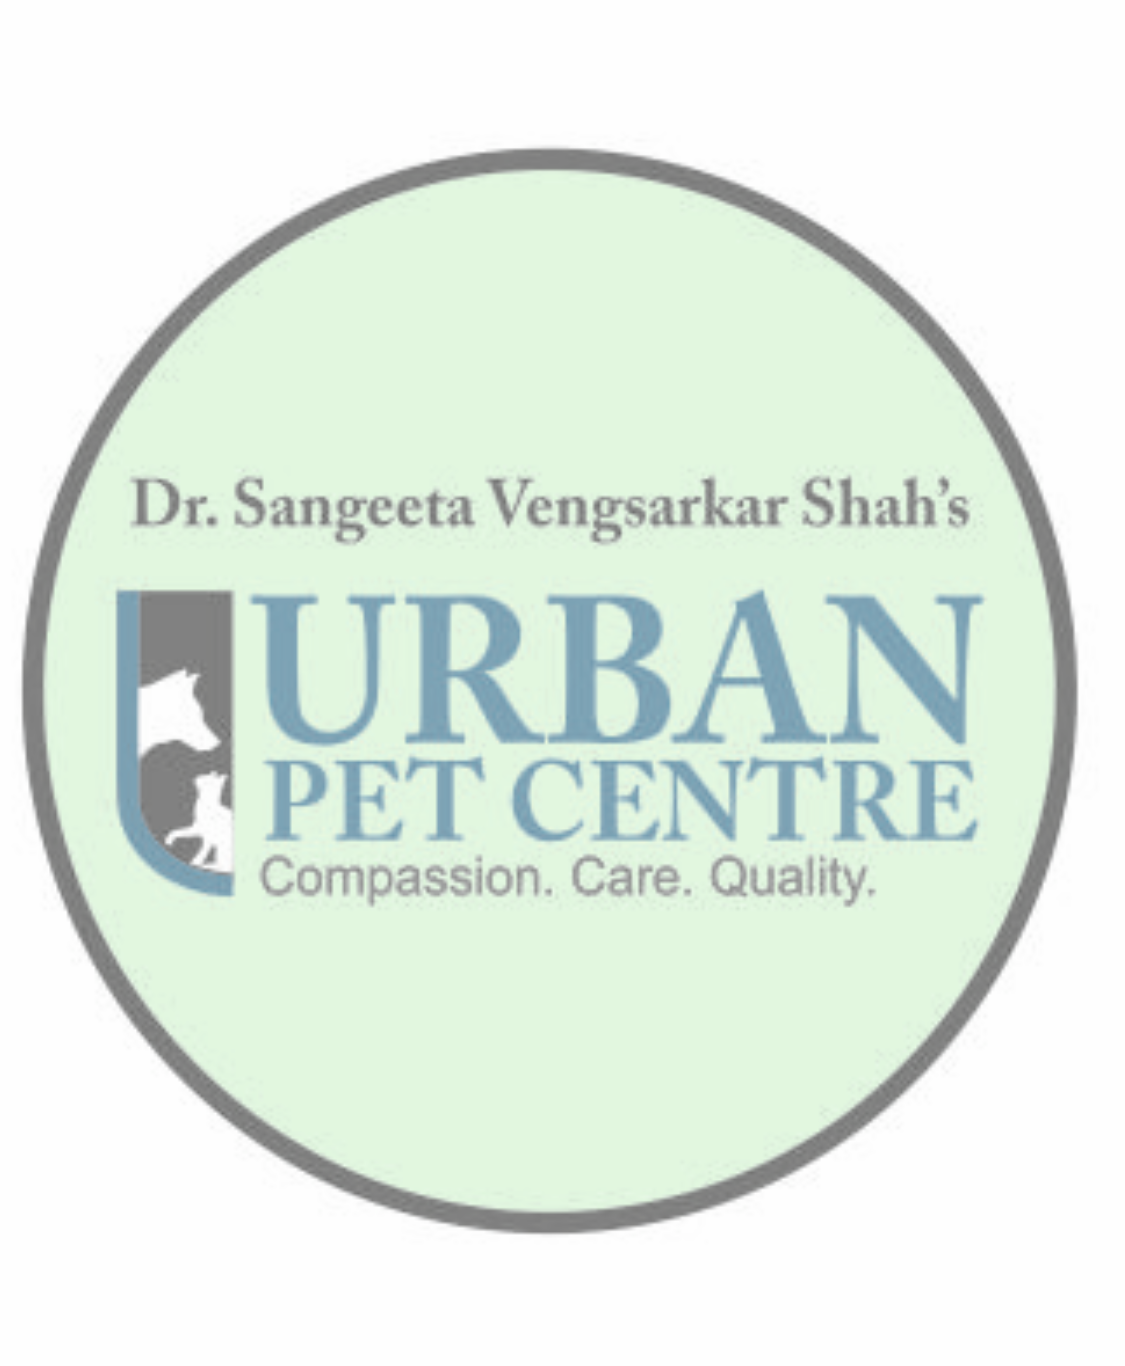 Urban Pet Centre|Clinics|Medical Services